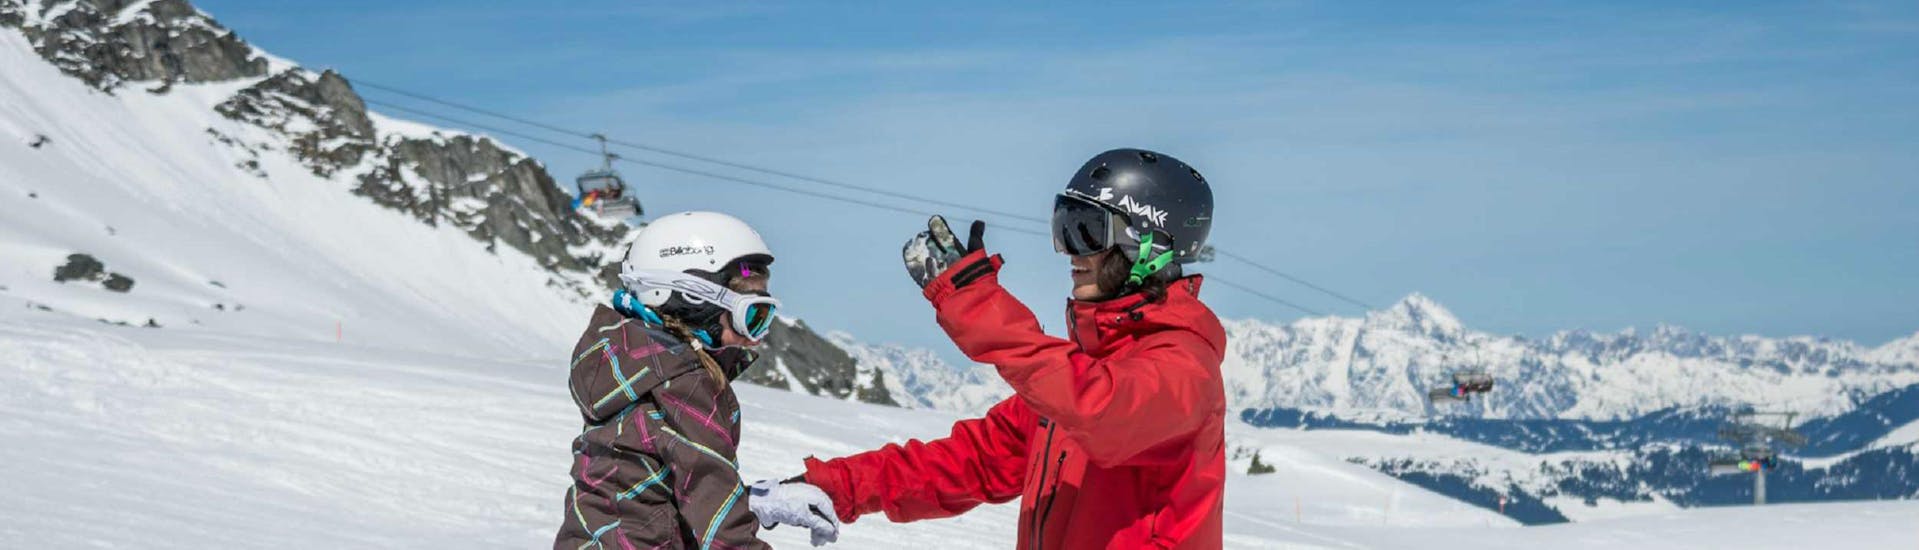 Lezioni di Snowboard a partire da 7 anni per principianti.